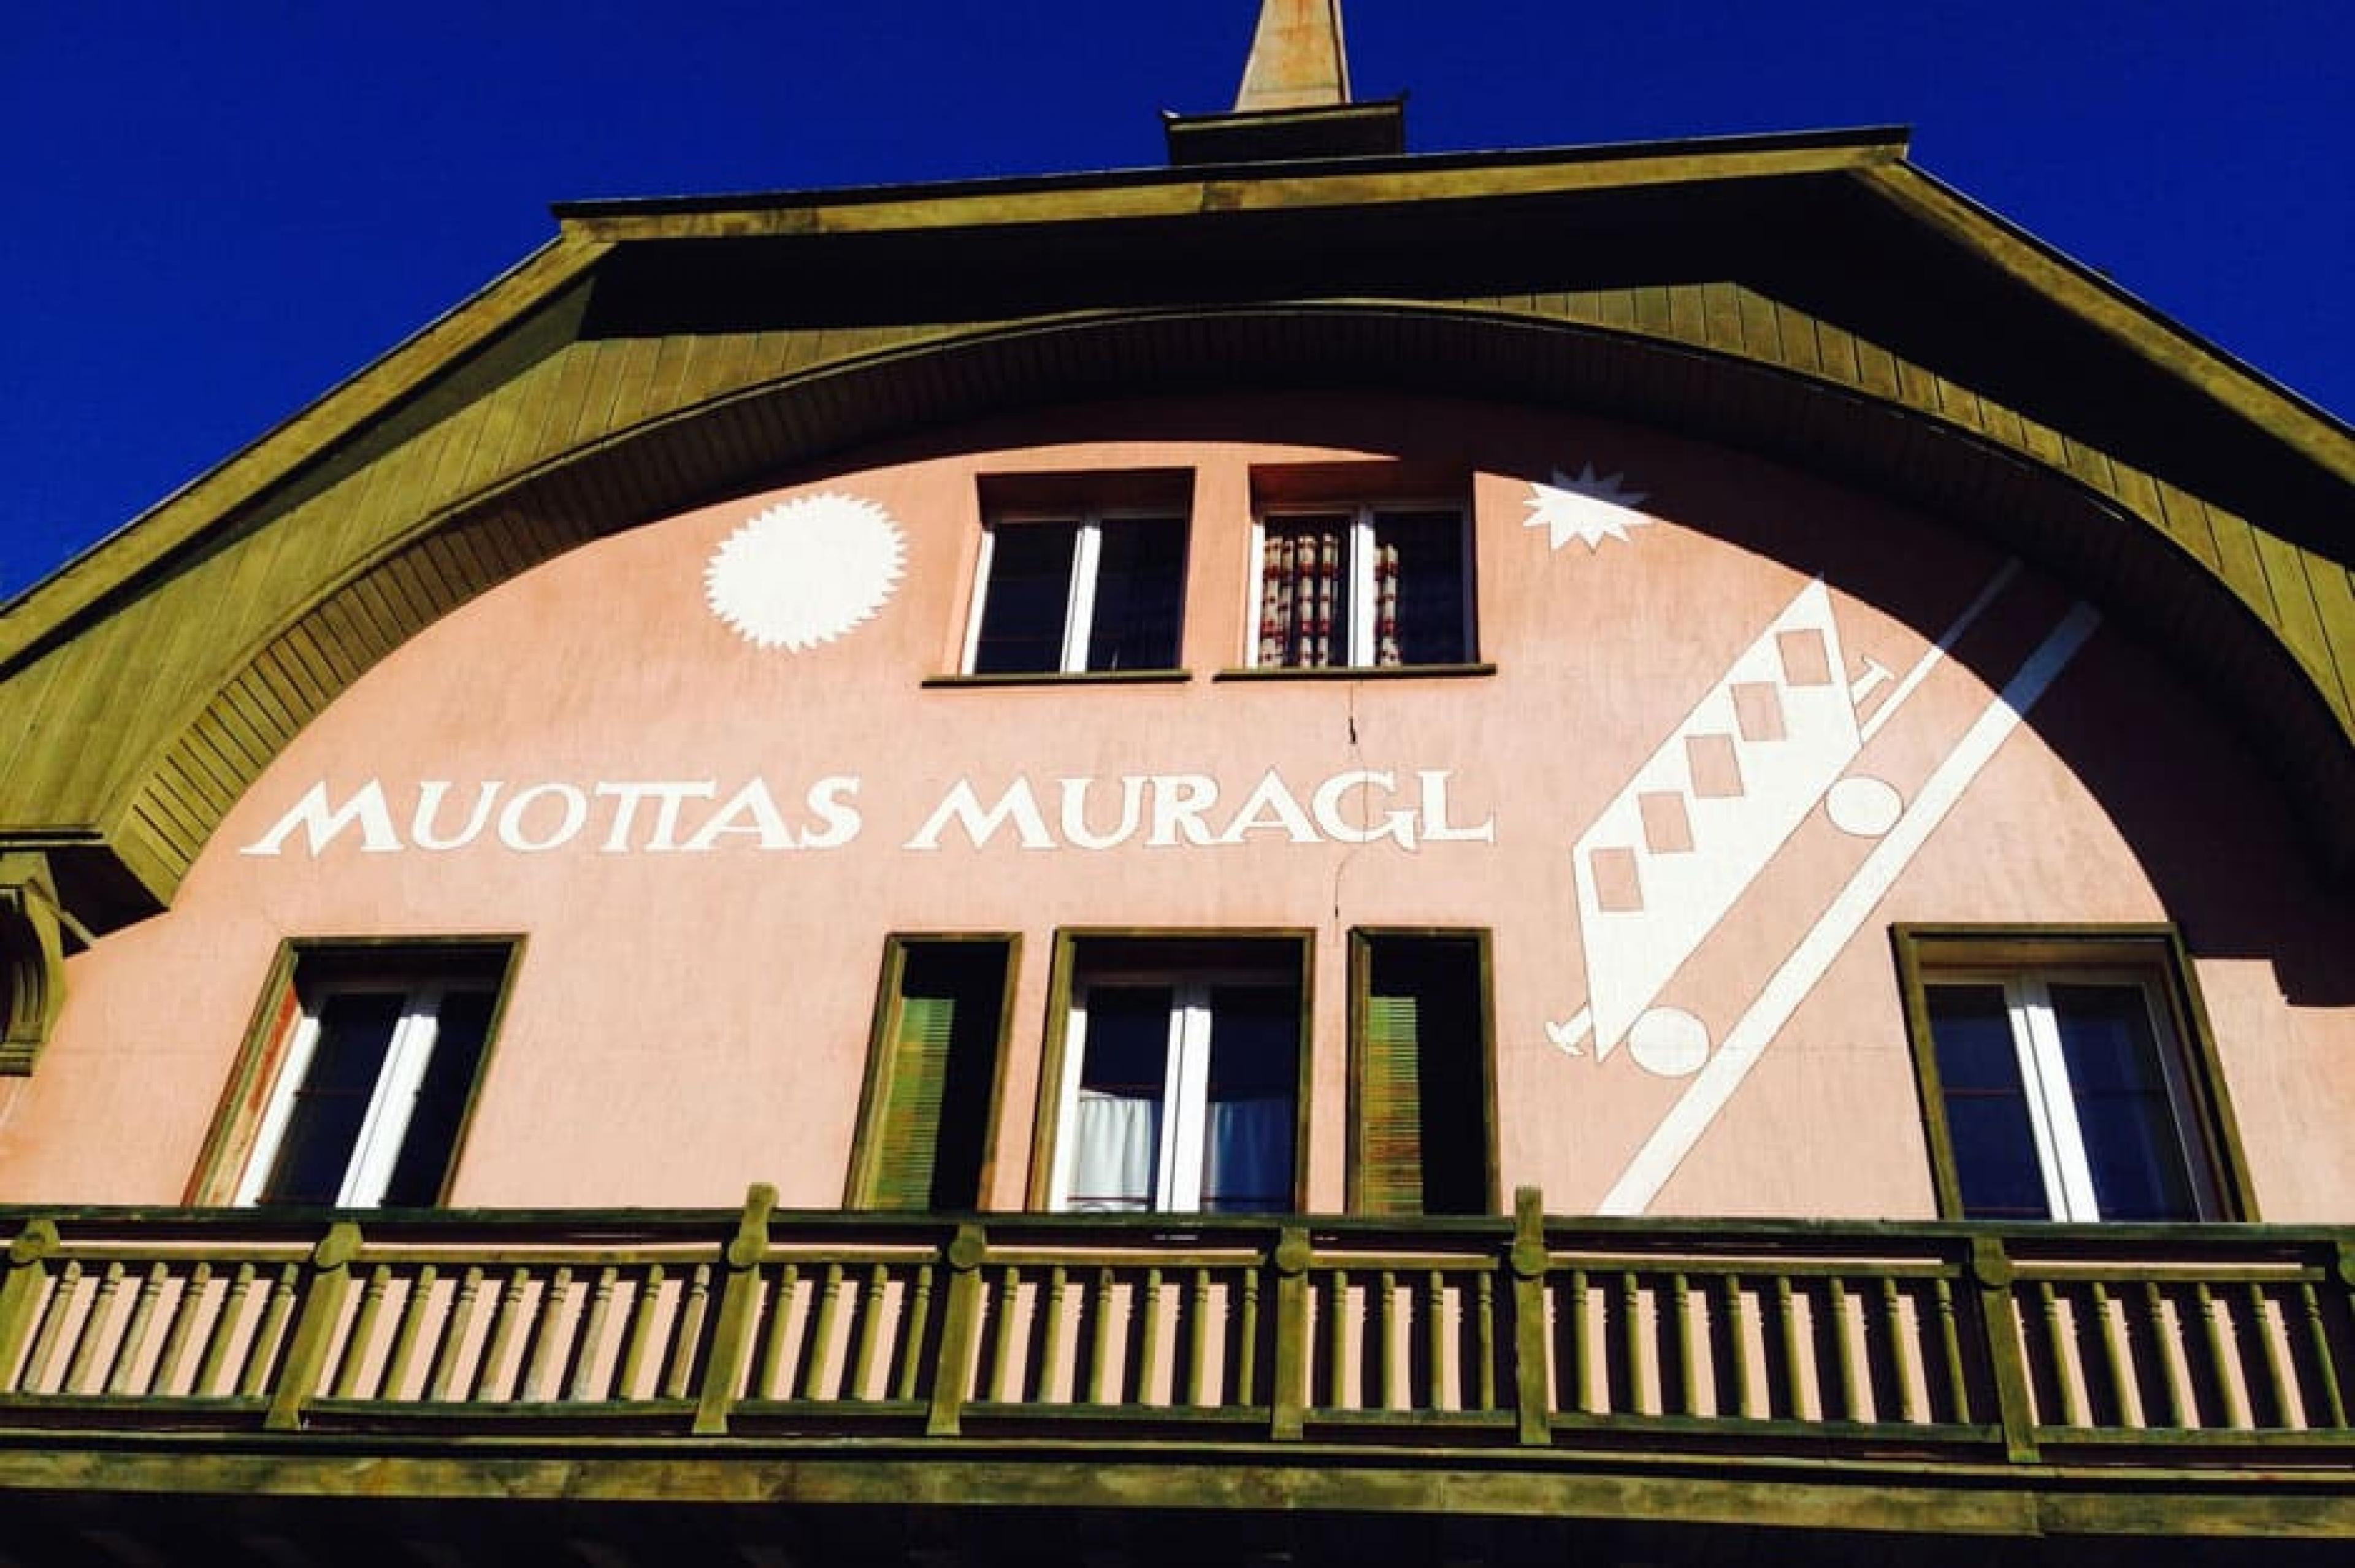 Exterior View - Muottas Muragl,,t. Moritz, Switzerland